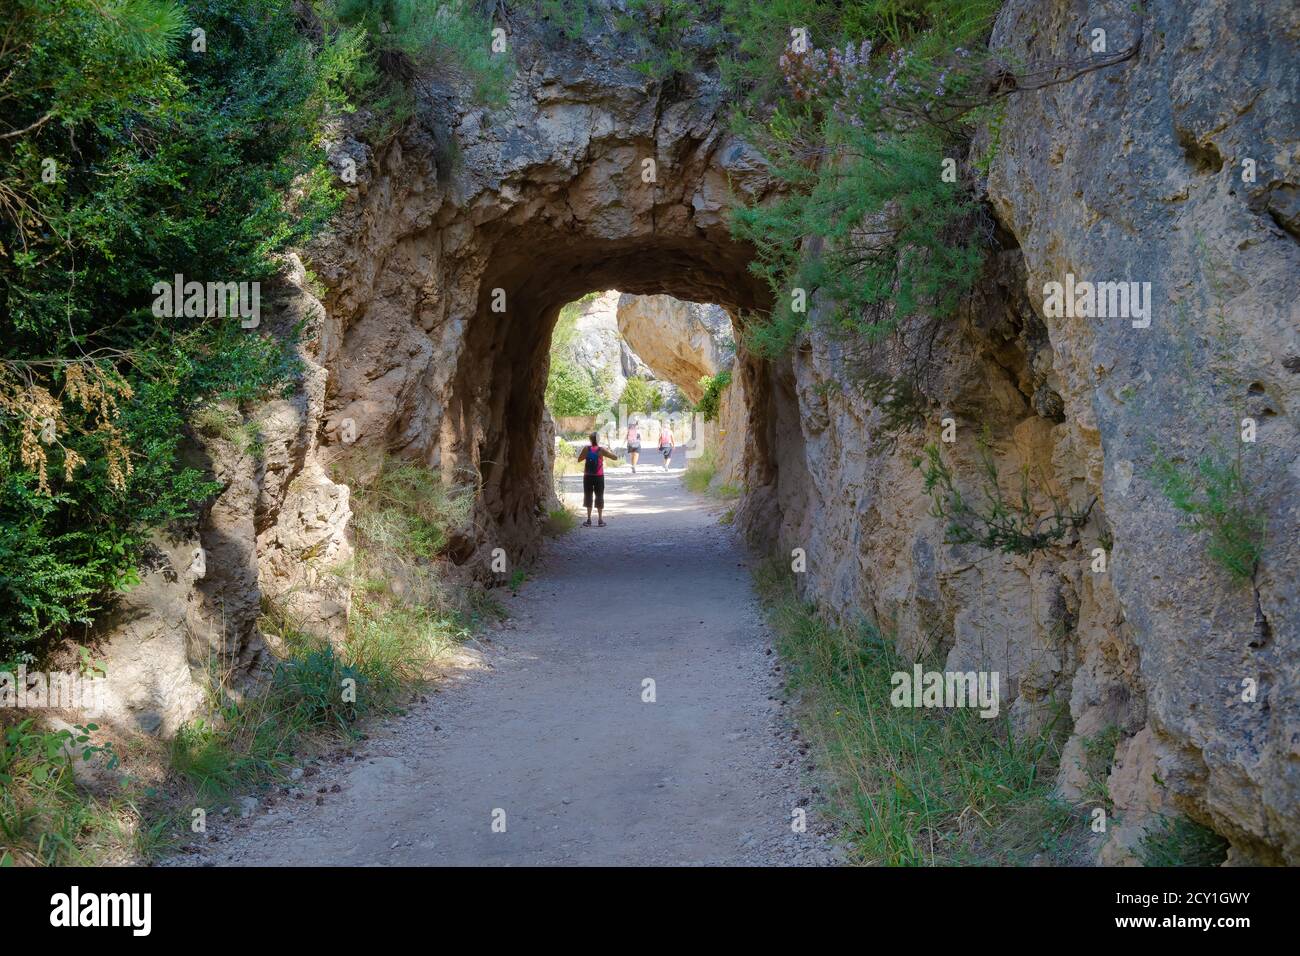 Tunnel in den Weg, der zum Parrizal Bereich führt, wo der Fluss Msatarranya bietet uns spektakuläre Ecken. Beseit, Matarranya, Aragon, Spanien Stockfoto